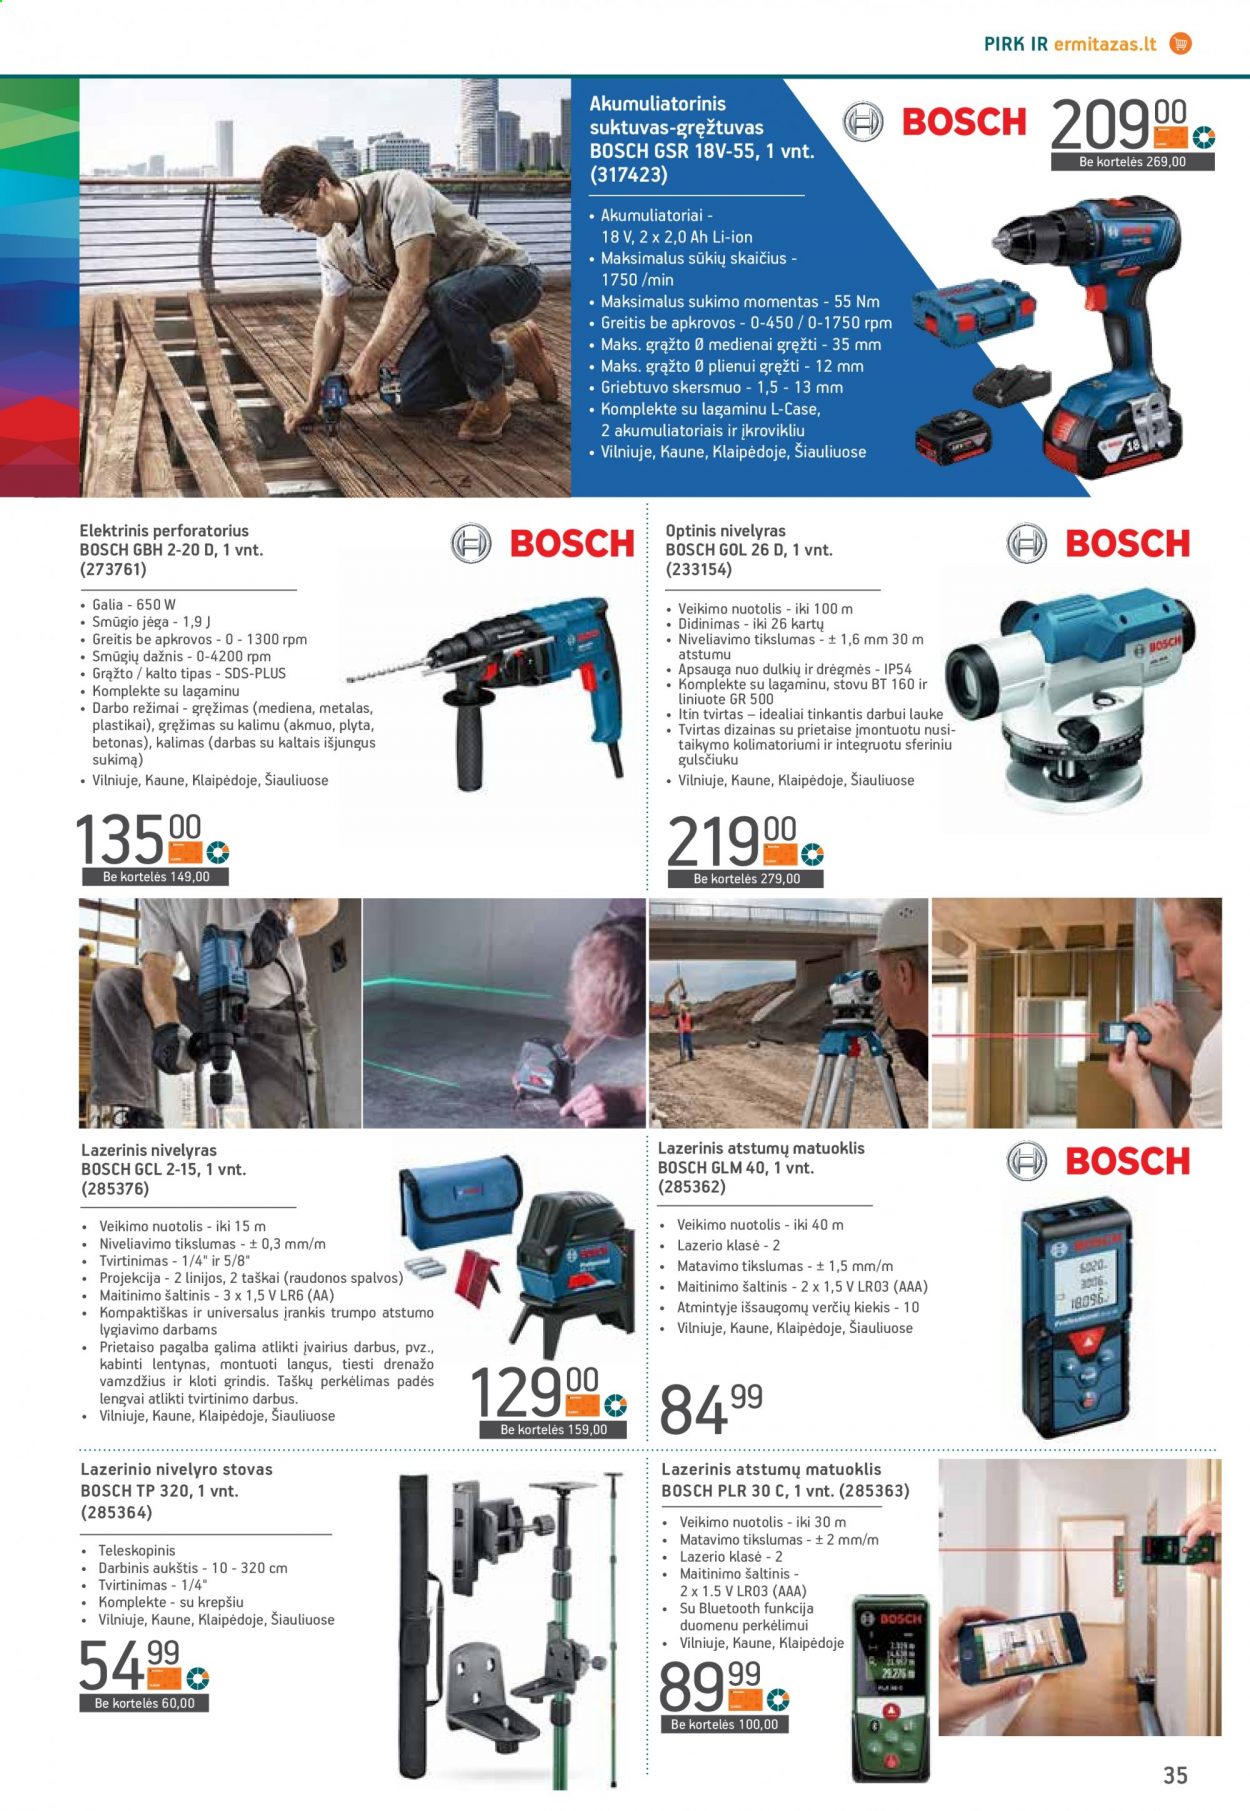 thumbnail - „ERMITAŽAS“ leidinys - 2021 06 09 - 2021 07 06 - Išpardavimų produktai - Bosch, lazerinis nivelyras, akumuliatorinis suktuvas, gręžtuvas, perforatorius, suktuvas, nivelyras, stovai. 35 puslapis.